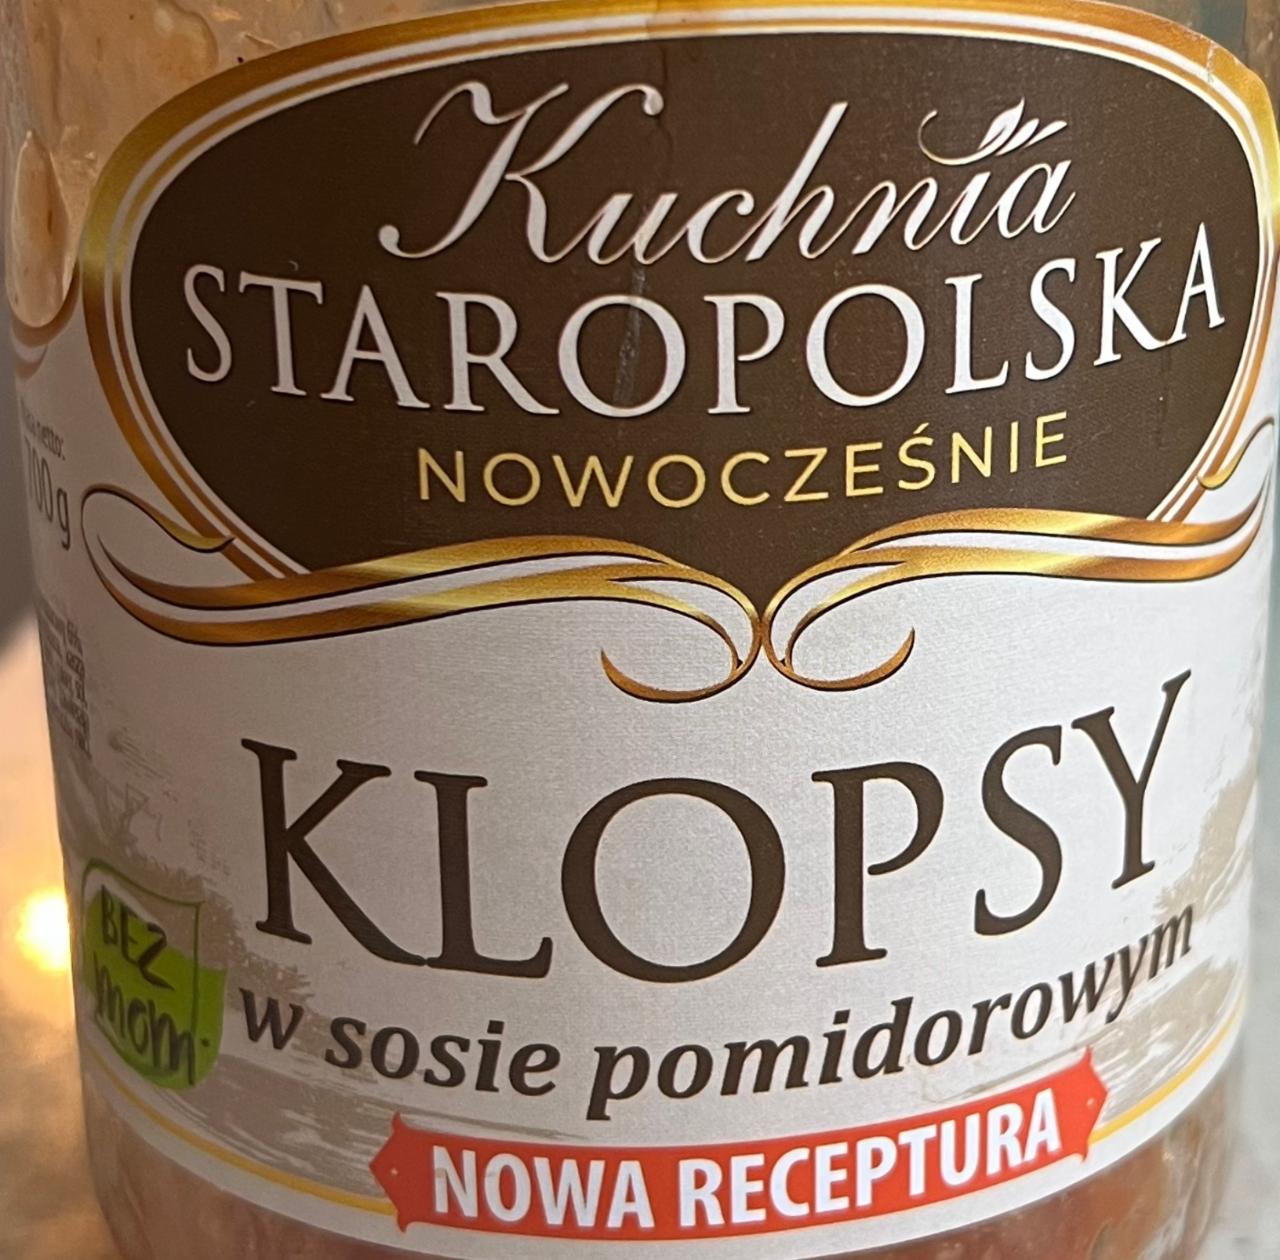 Fotografie - klopsy w society pomidorowym Kuchnia Staropolska